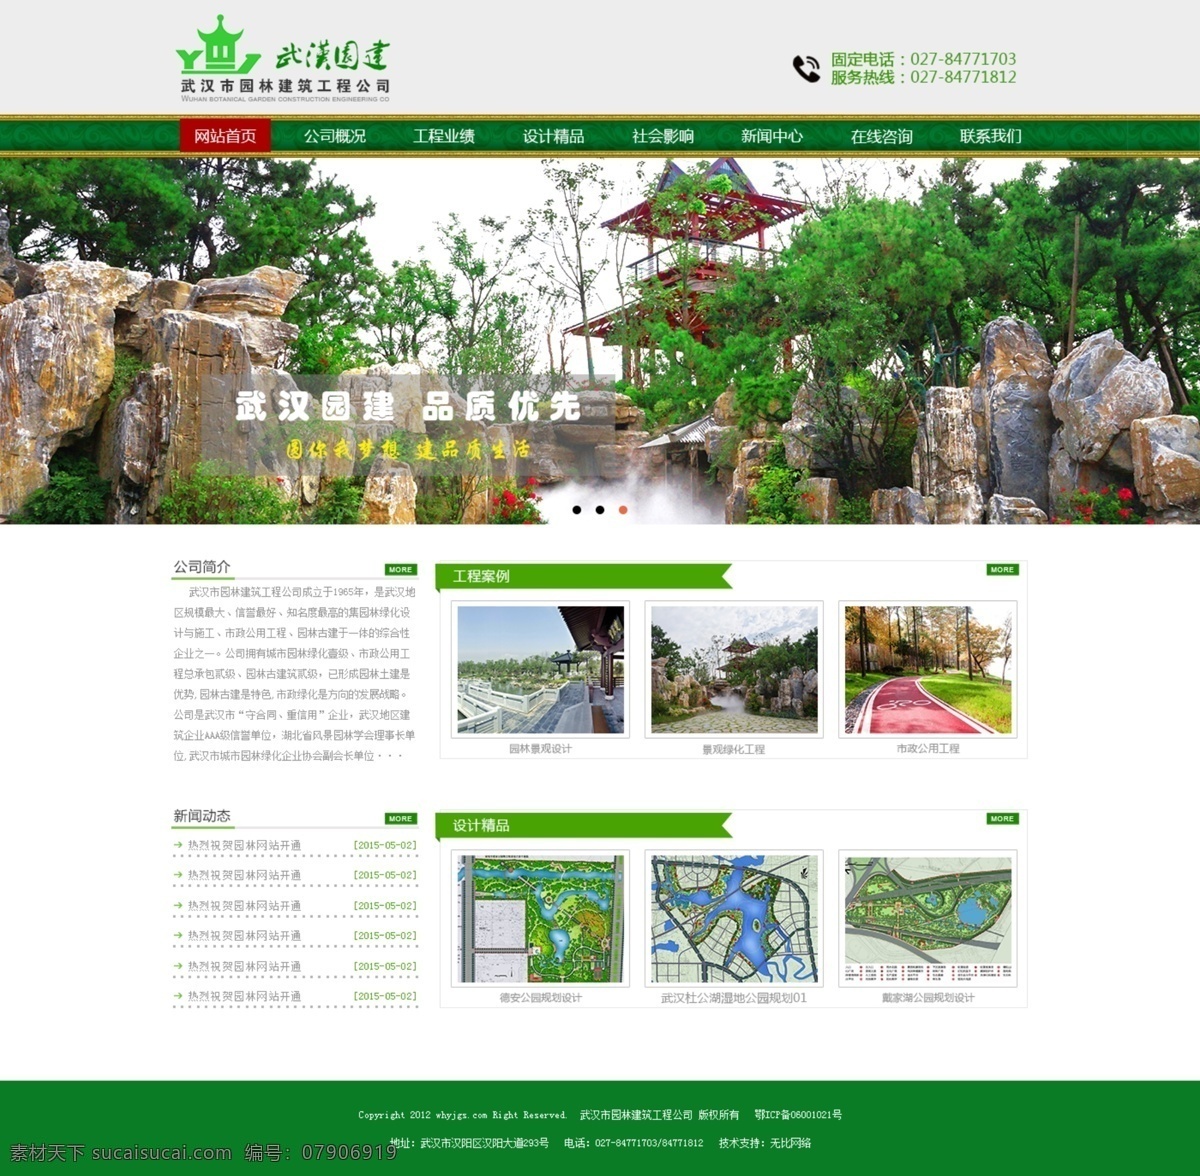 园林建筑 公司 首页 高清 设计图 高清图片素材 设计素材 模板设计 版面设计背景 白色